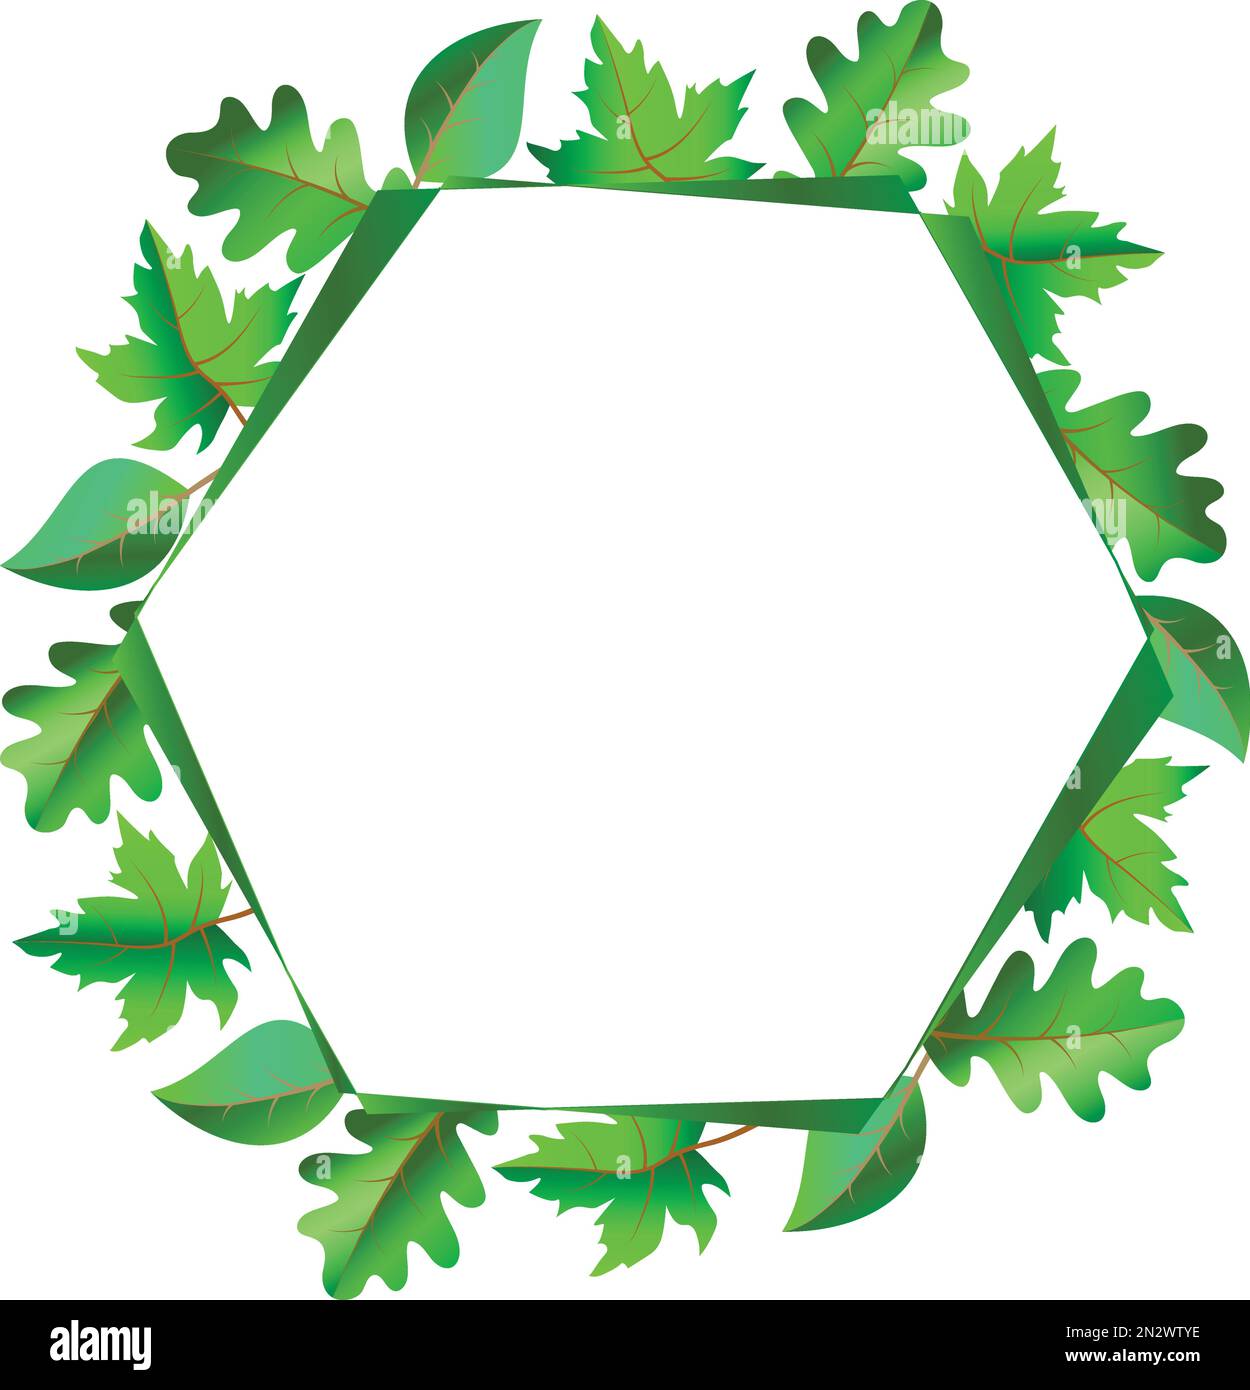 Cadre de printemps frais hexagonal avec feuilles vertes d'érable, de chêne et de bouleau Illustration de Vecteur